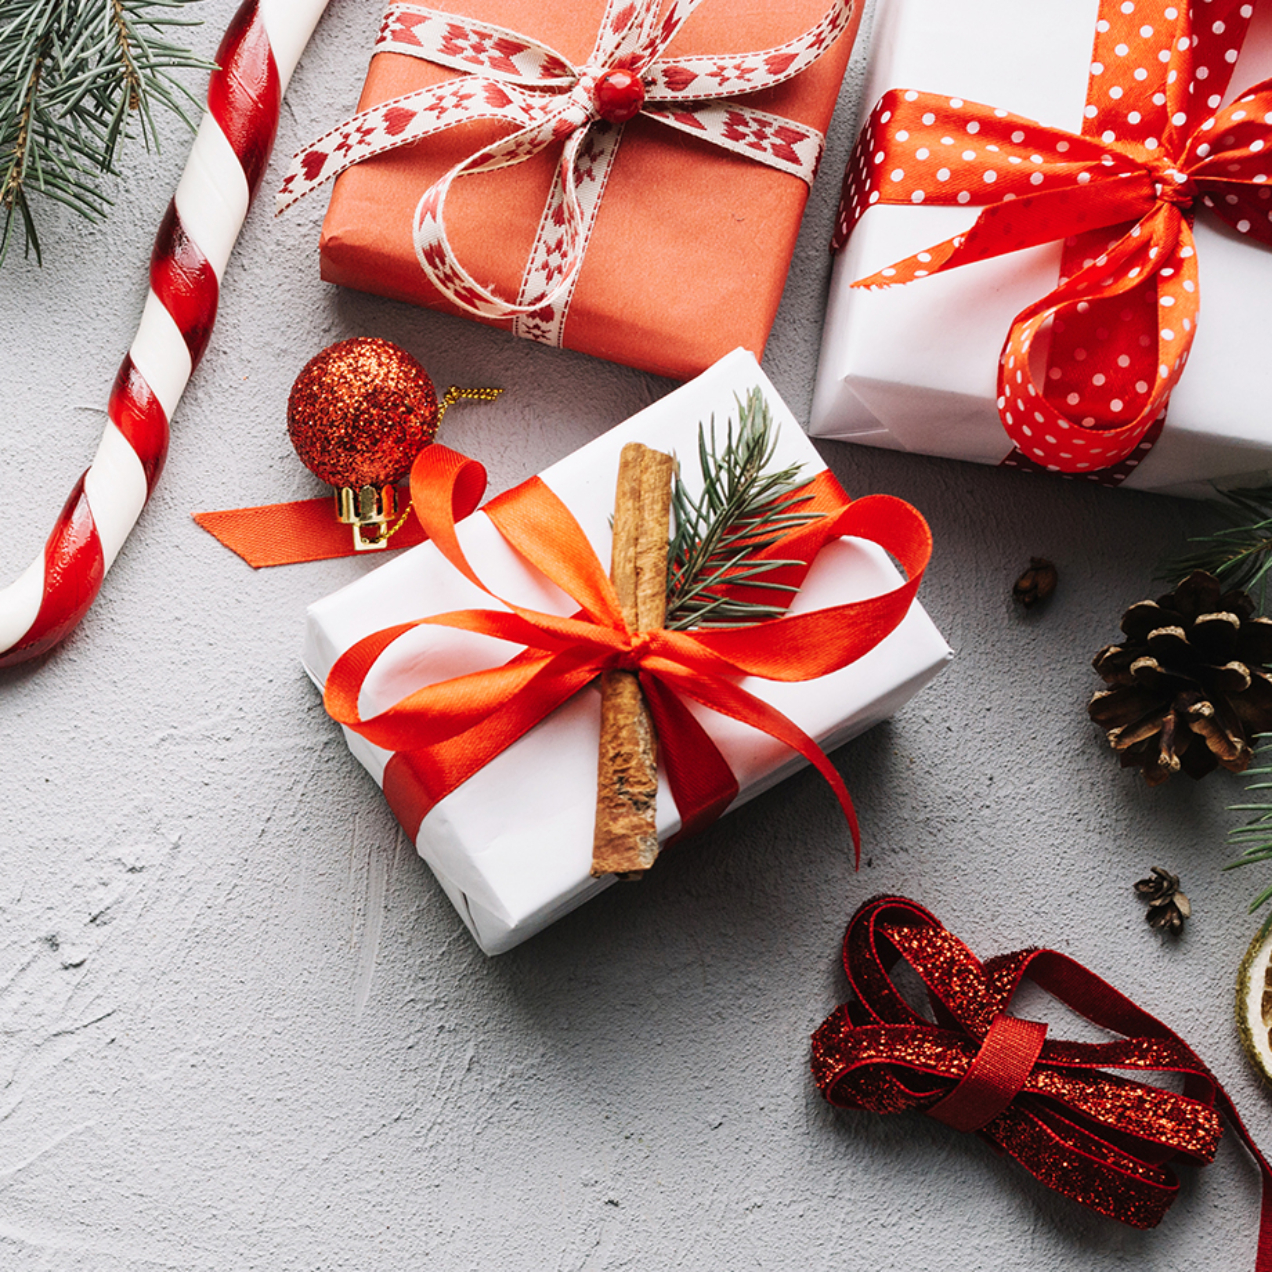 Beauty & letture speciale Natale: consigli per i regali!